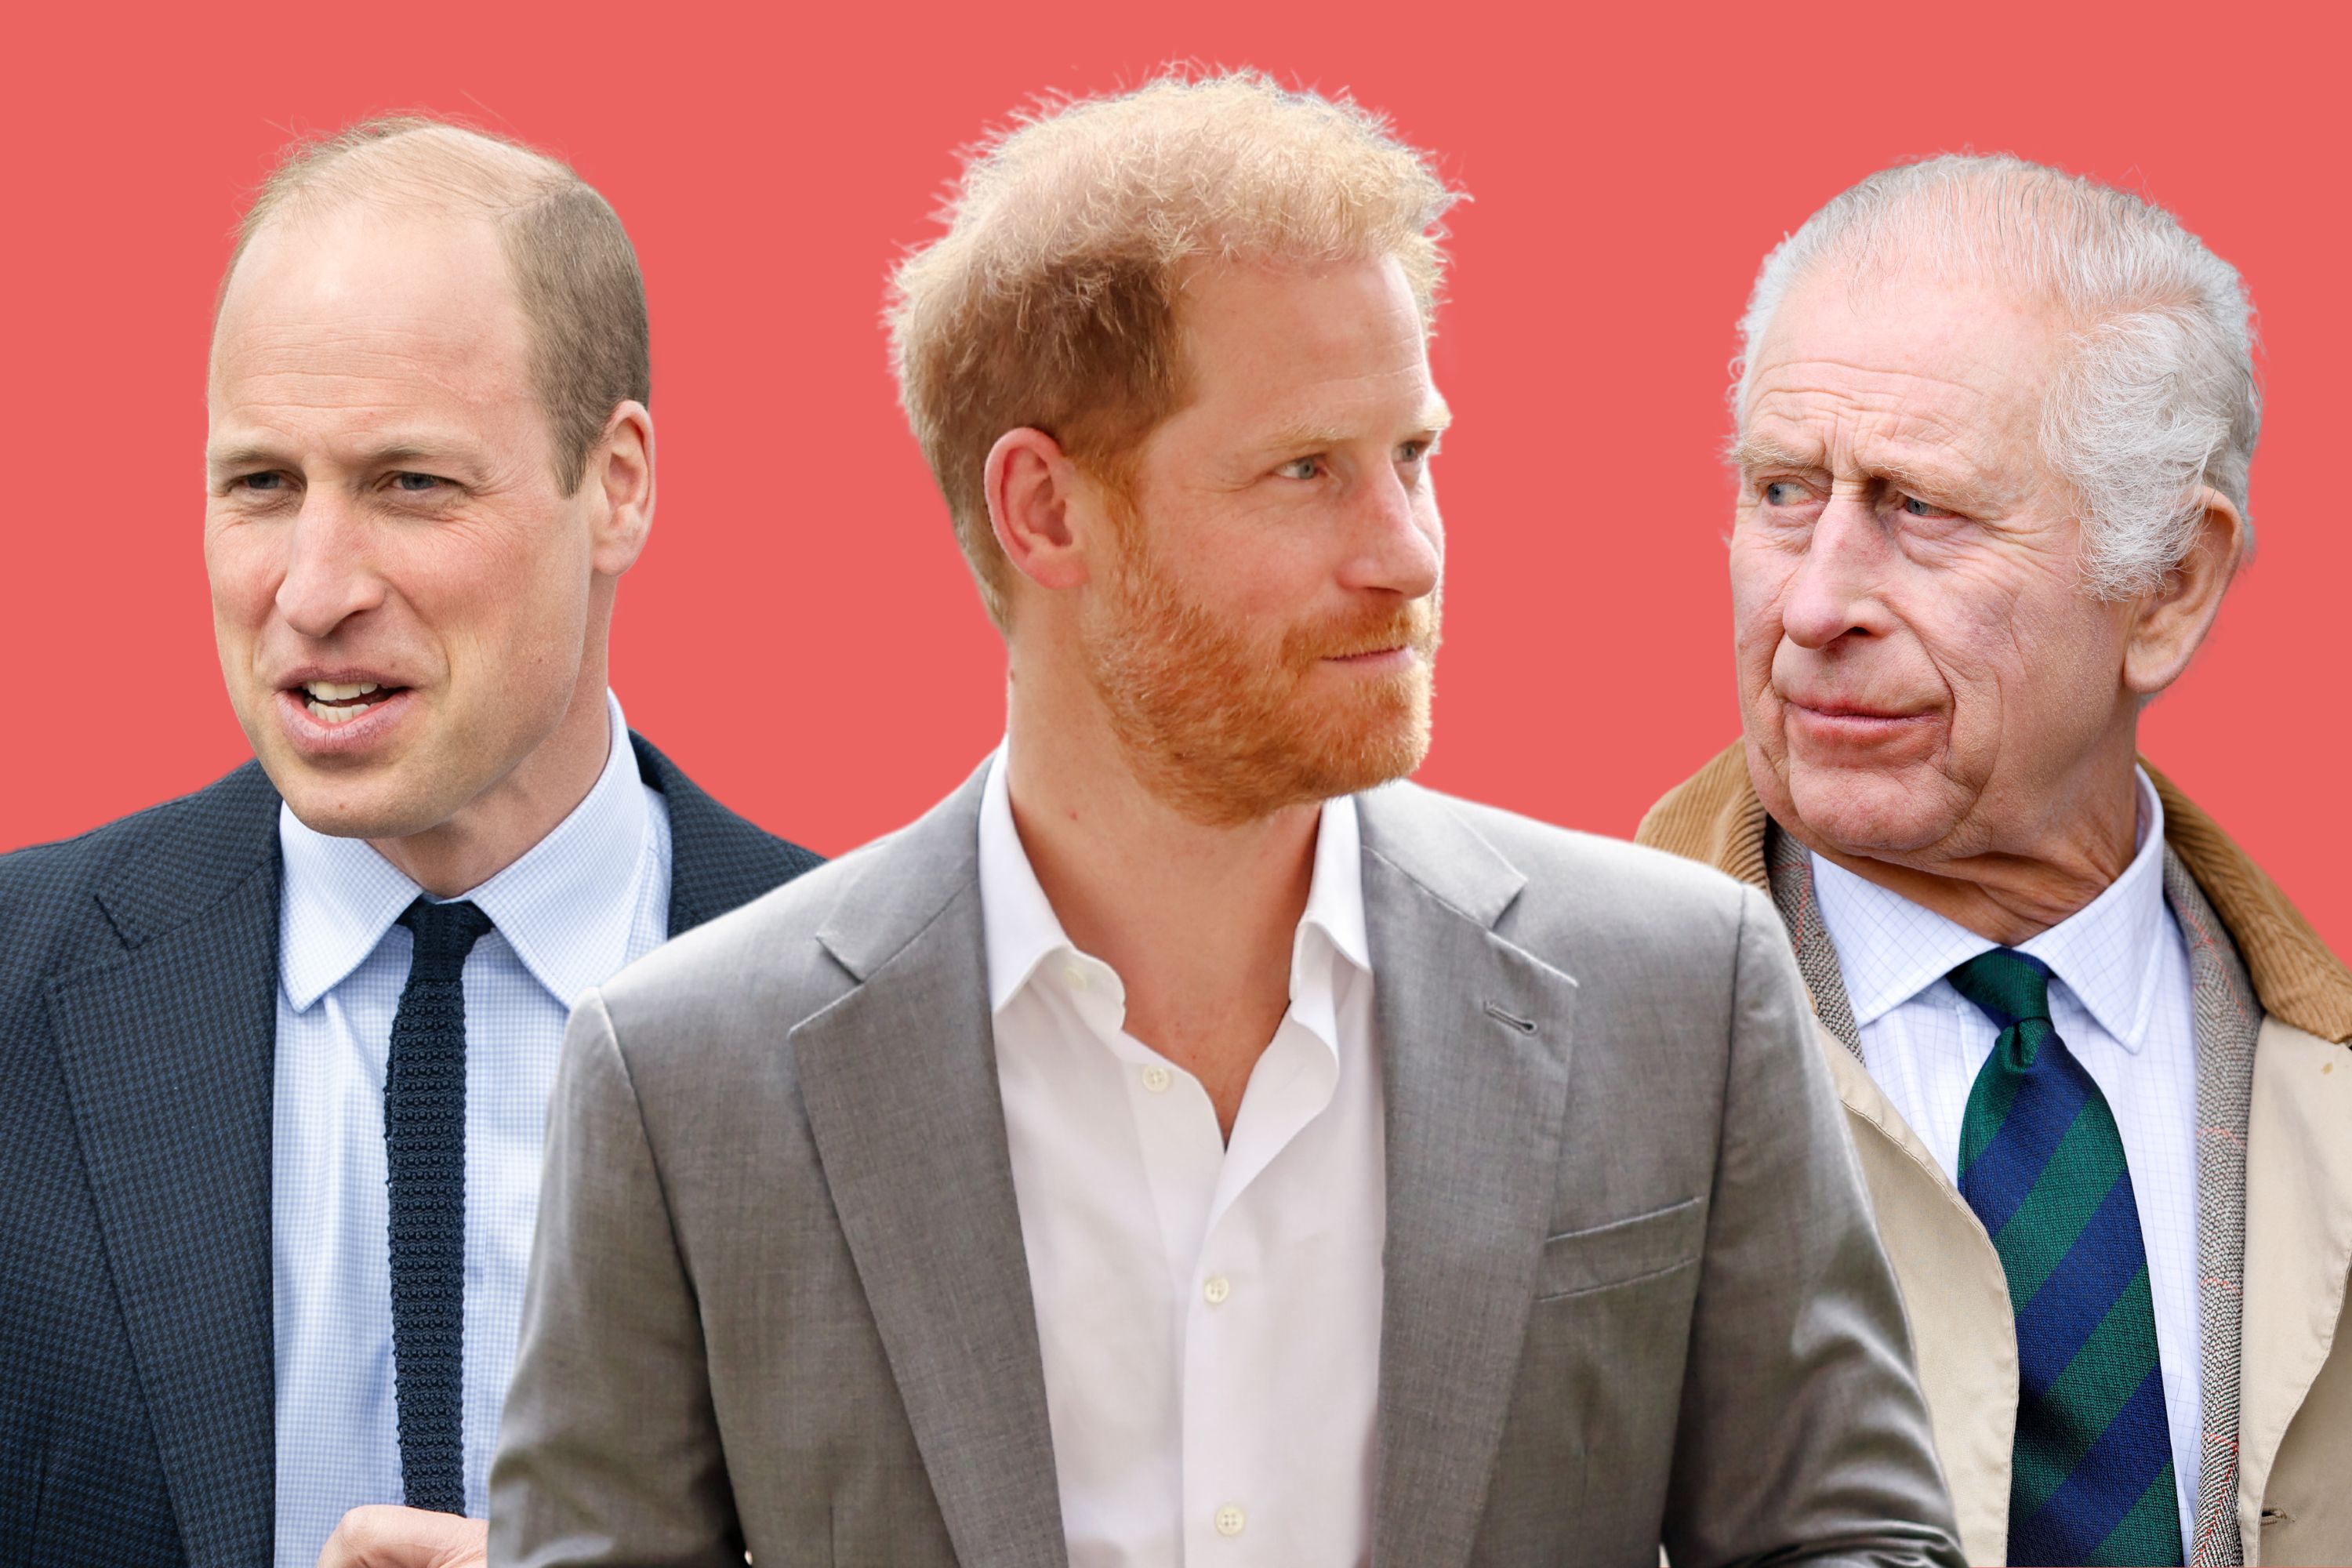 O desdém do rei Charles pelo príncipe Harry pode ser um erro caro